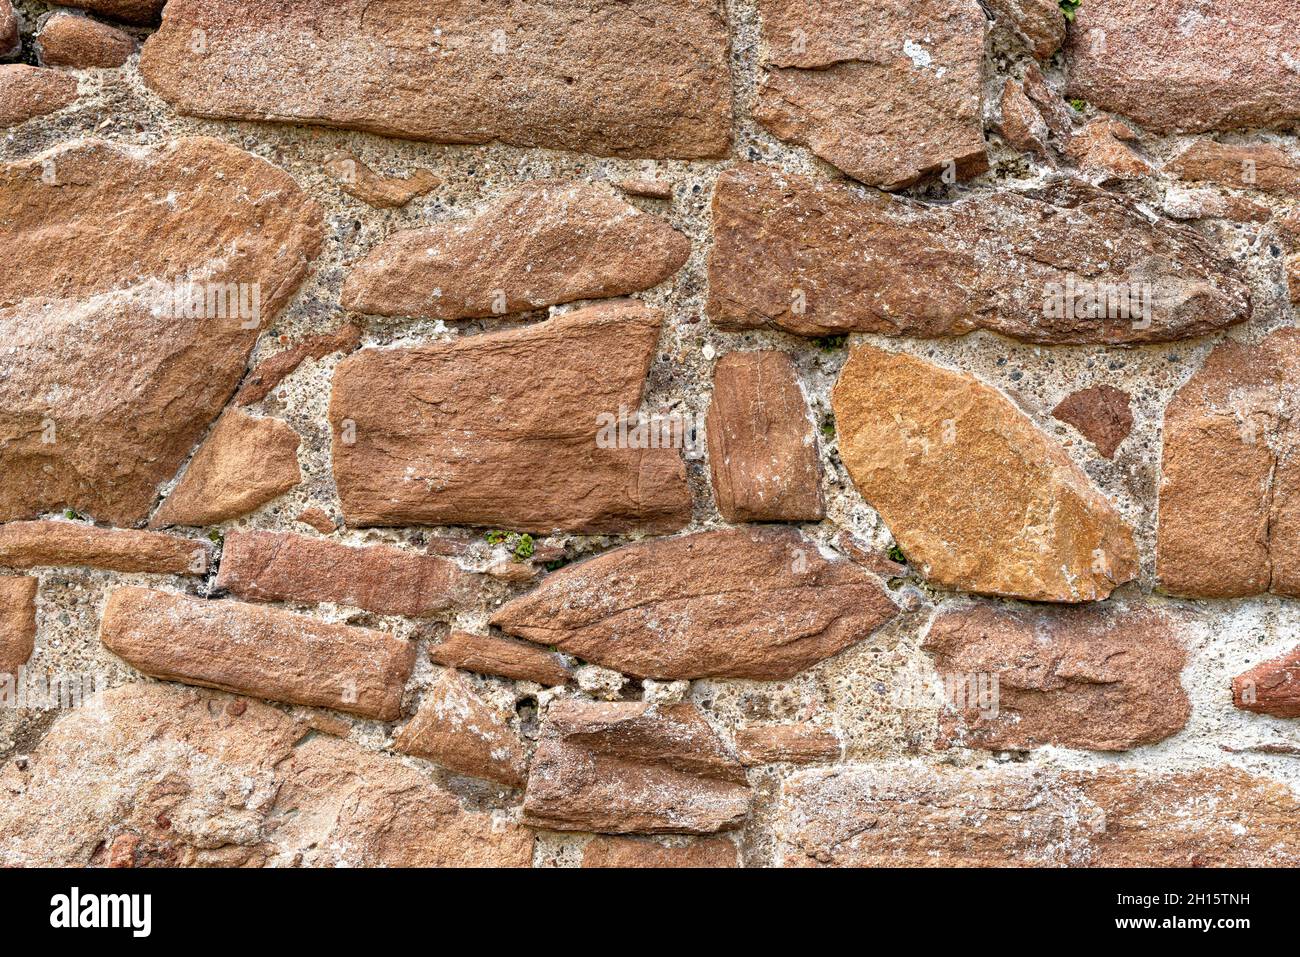 Arrière-plan - Un mur en pierre sèche au château d'Urquhart - Drumnadrochit, Highland, Écosse, Royaume-Uni Banque D'Images